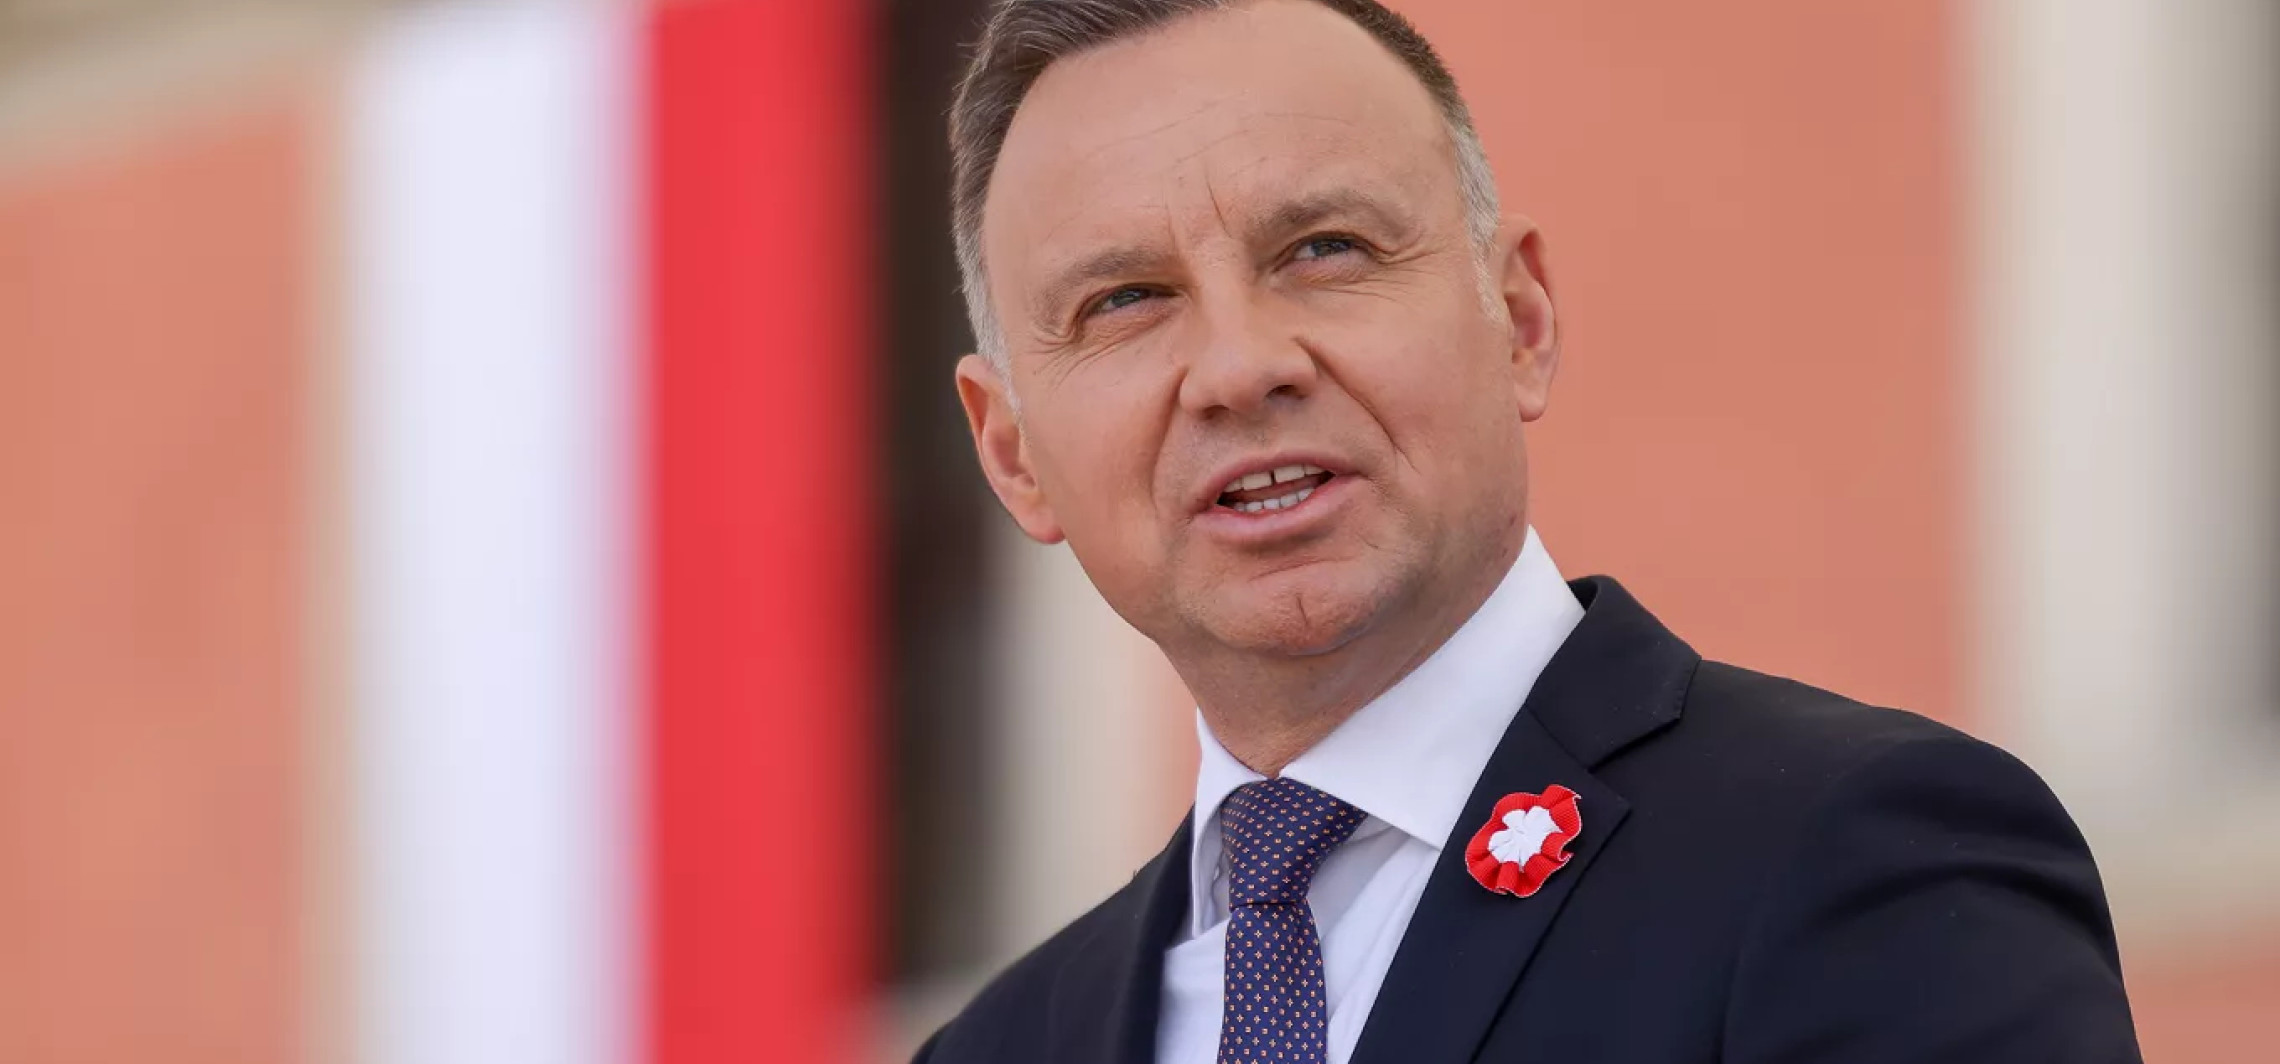 Inowrocław - Prezydent Andrzej Duda przyjedzie do Latkowa